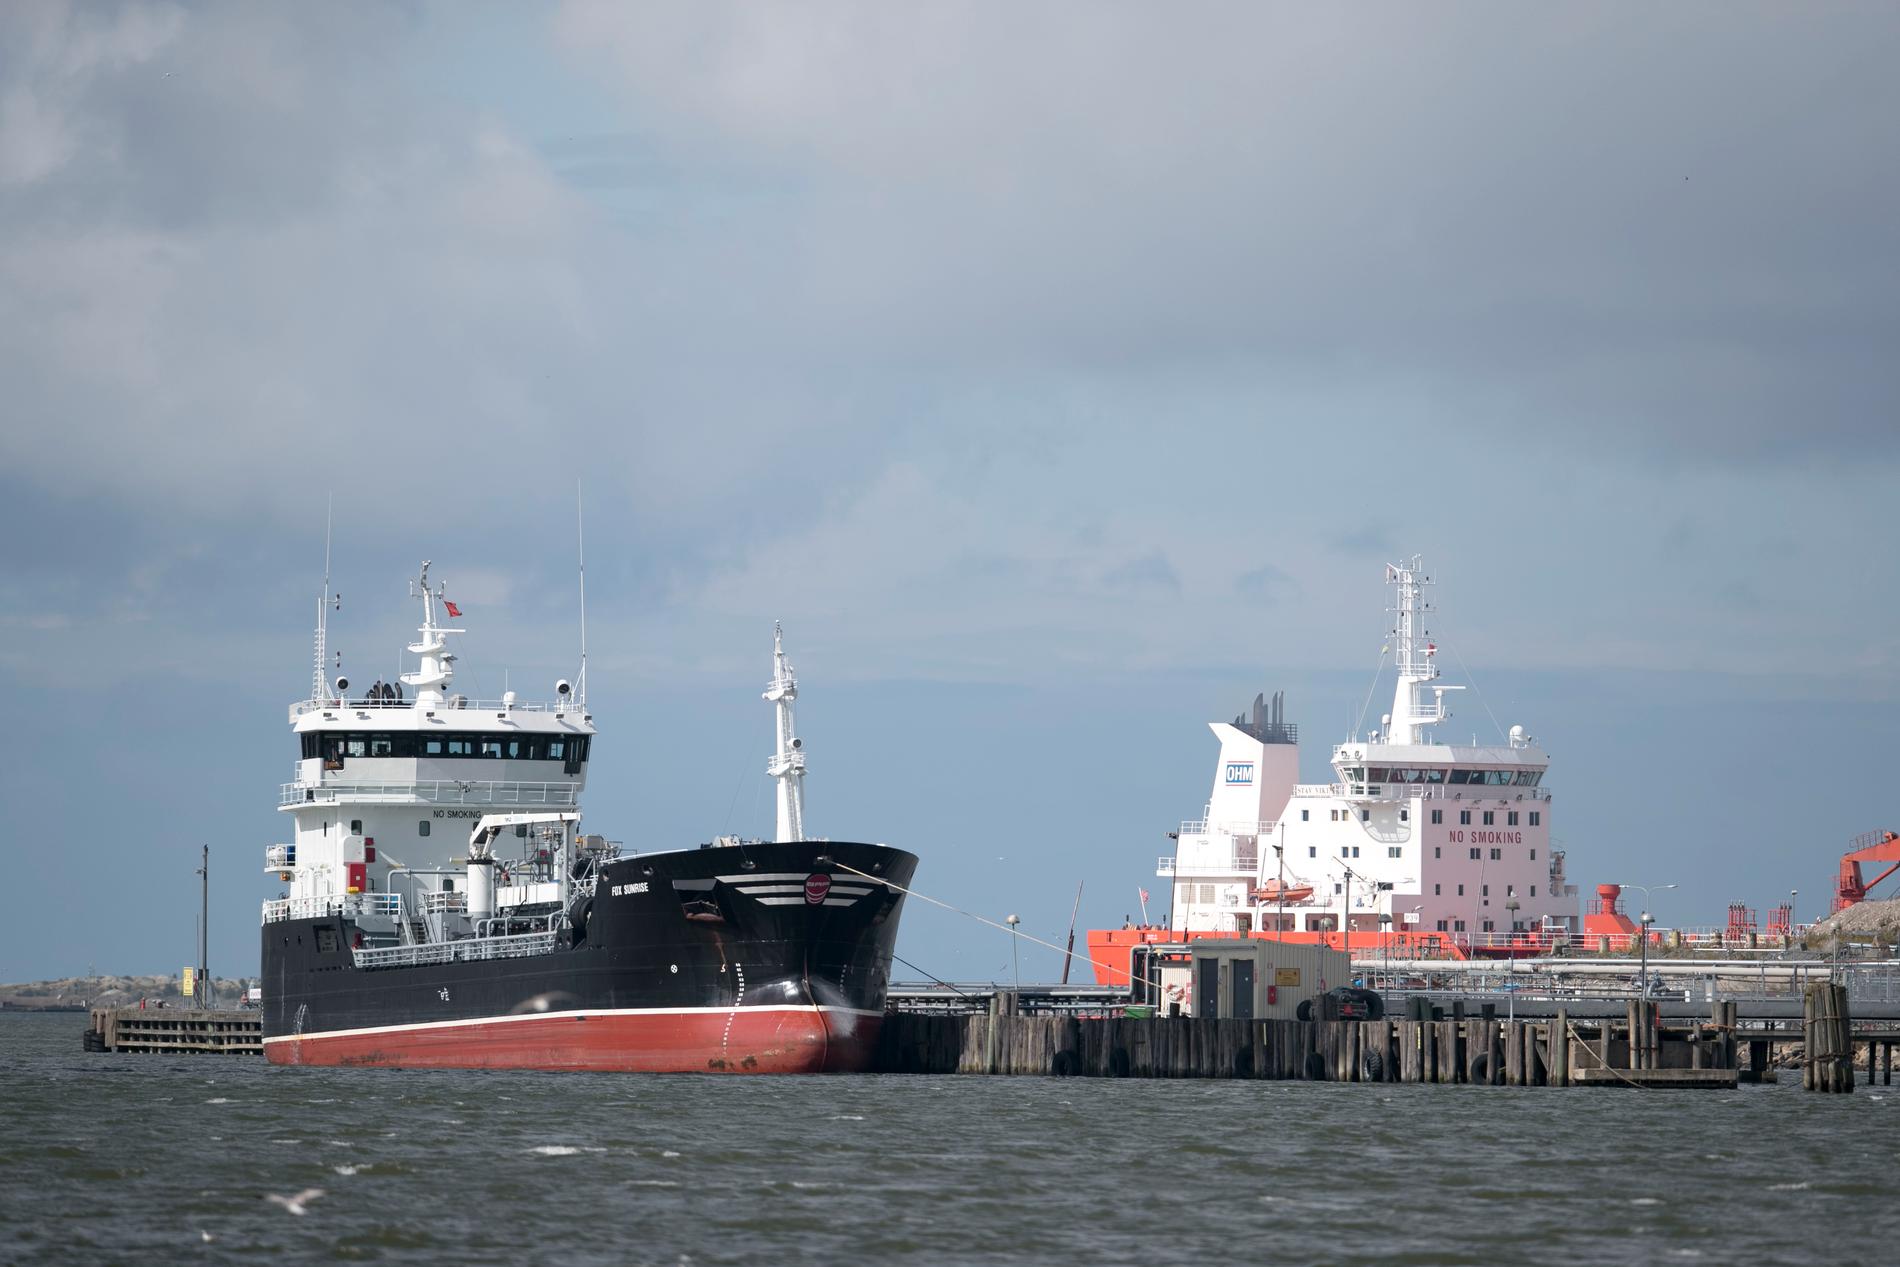 Finlands bevakning av Östersjön stärks med en ny specialoperation, skriver finska Hufvudstadsbladet. Fartygen på bilden har inget med specialoperationen att göra.